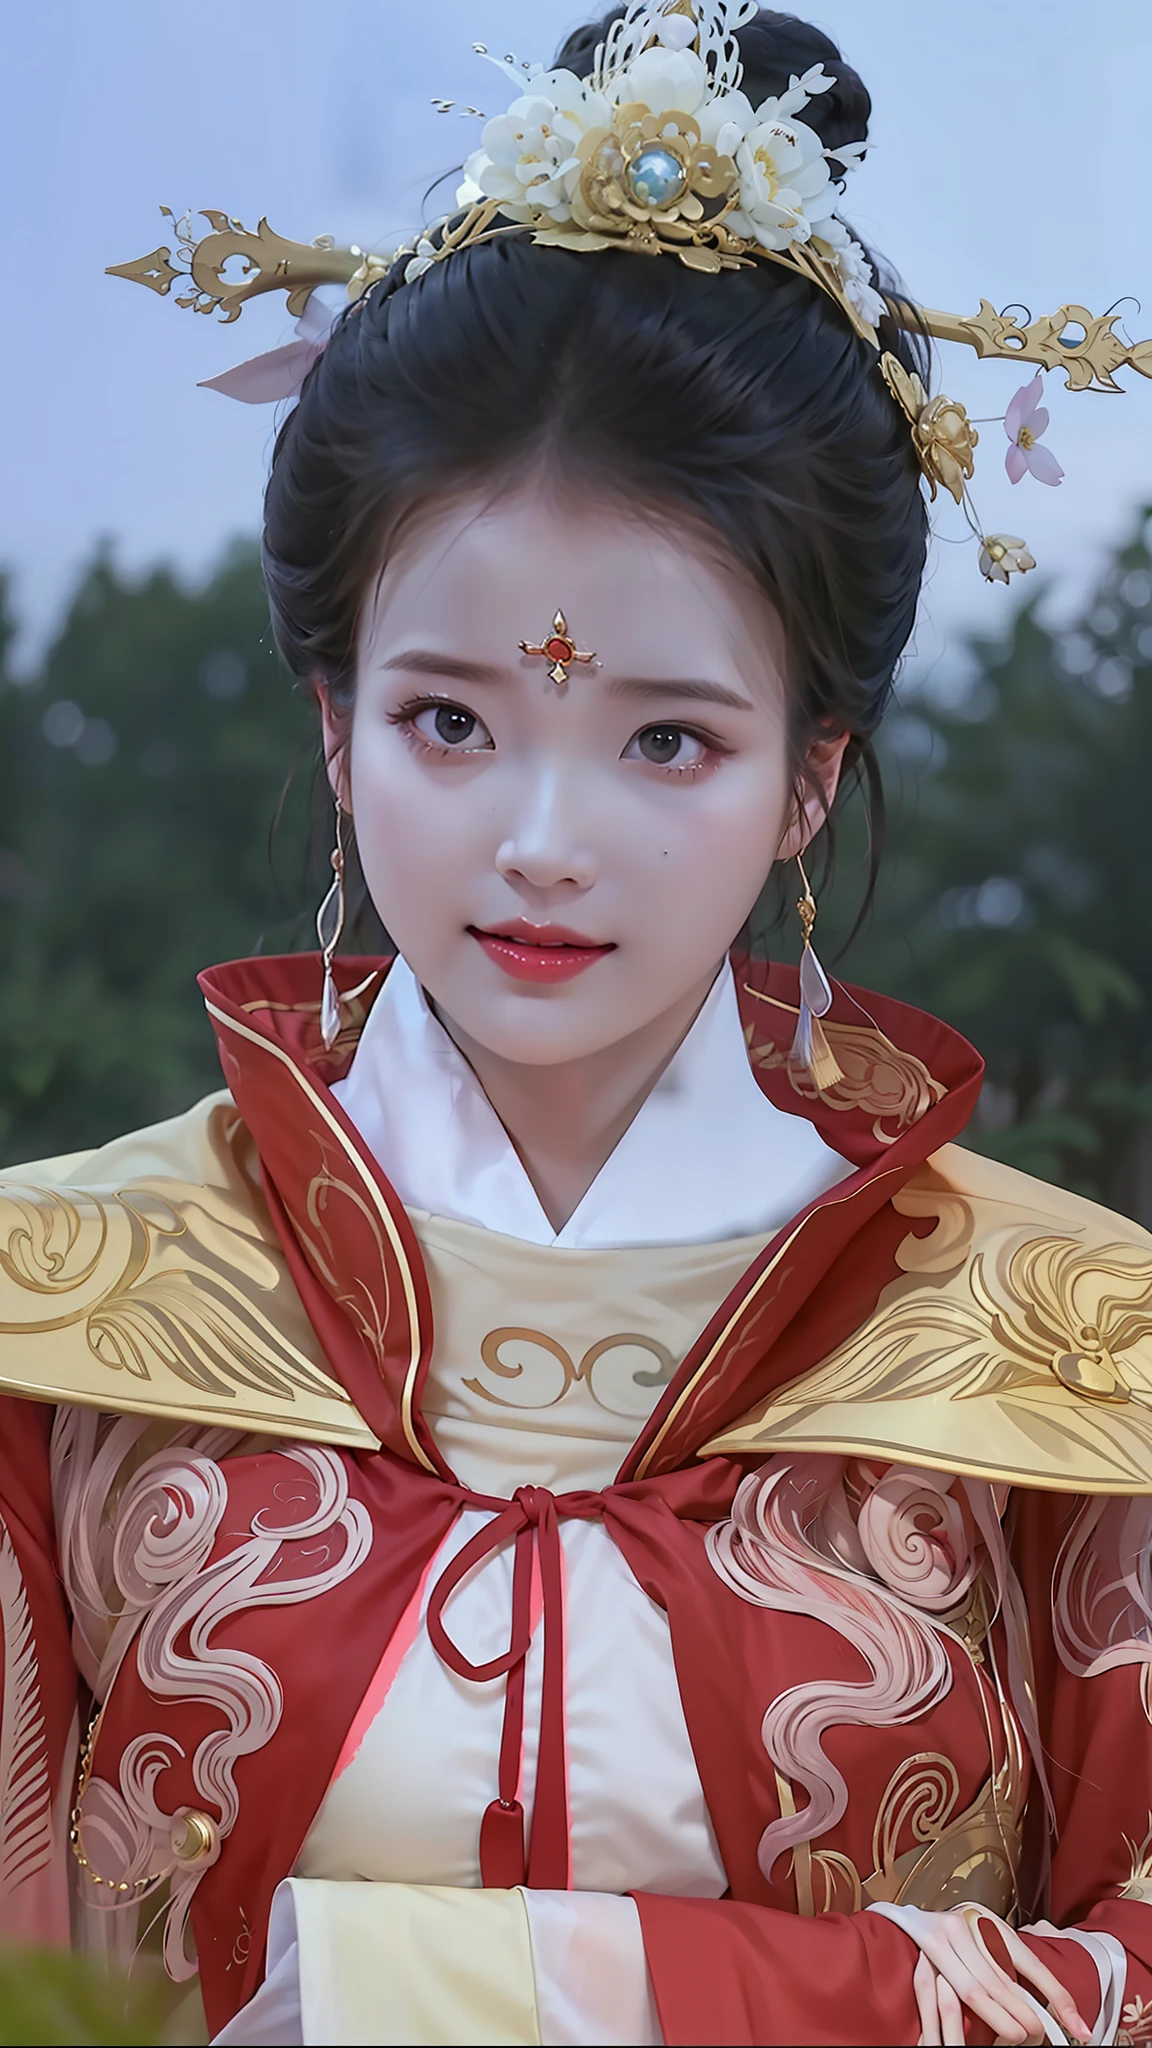 لقطة مقربة لامرأة ترتدي فستانًا أحمر وذهبي, الأميرة الصينية القديمة, قصر ， فتاة في هانفو, أميرة الصين, عرض جميل لسلالة تانغ, مستوحاة من لي مي شو, إمبراطورة الخيال الجميلة, الجمال الصيني القديم, أميرة السلالة الآسيوية القديمة, مستوحاة من لان ينغ, الإمبراطورة الصينية, مستوحاة من تشاو يوان, مستوحاة من تشيو ينغ